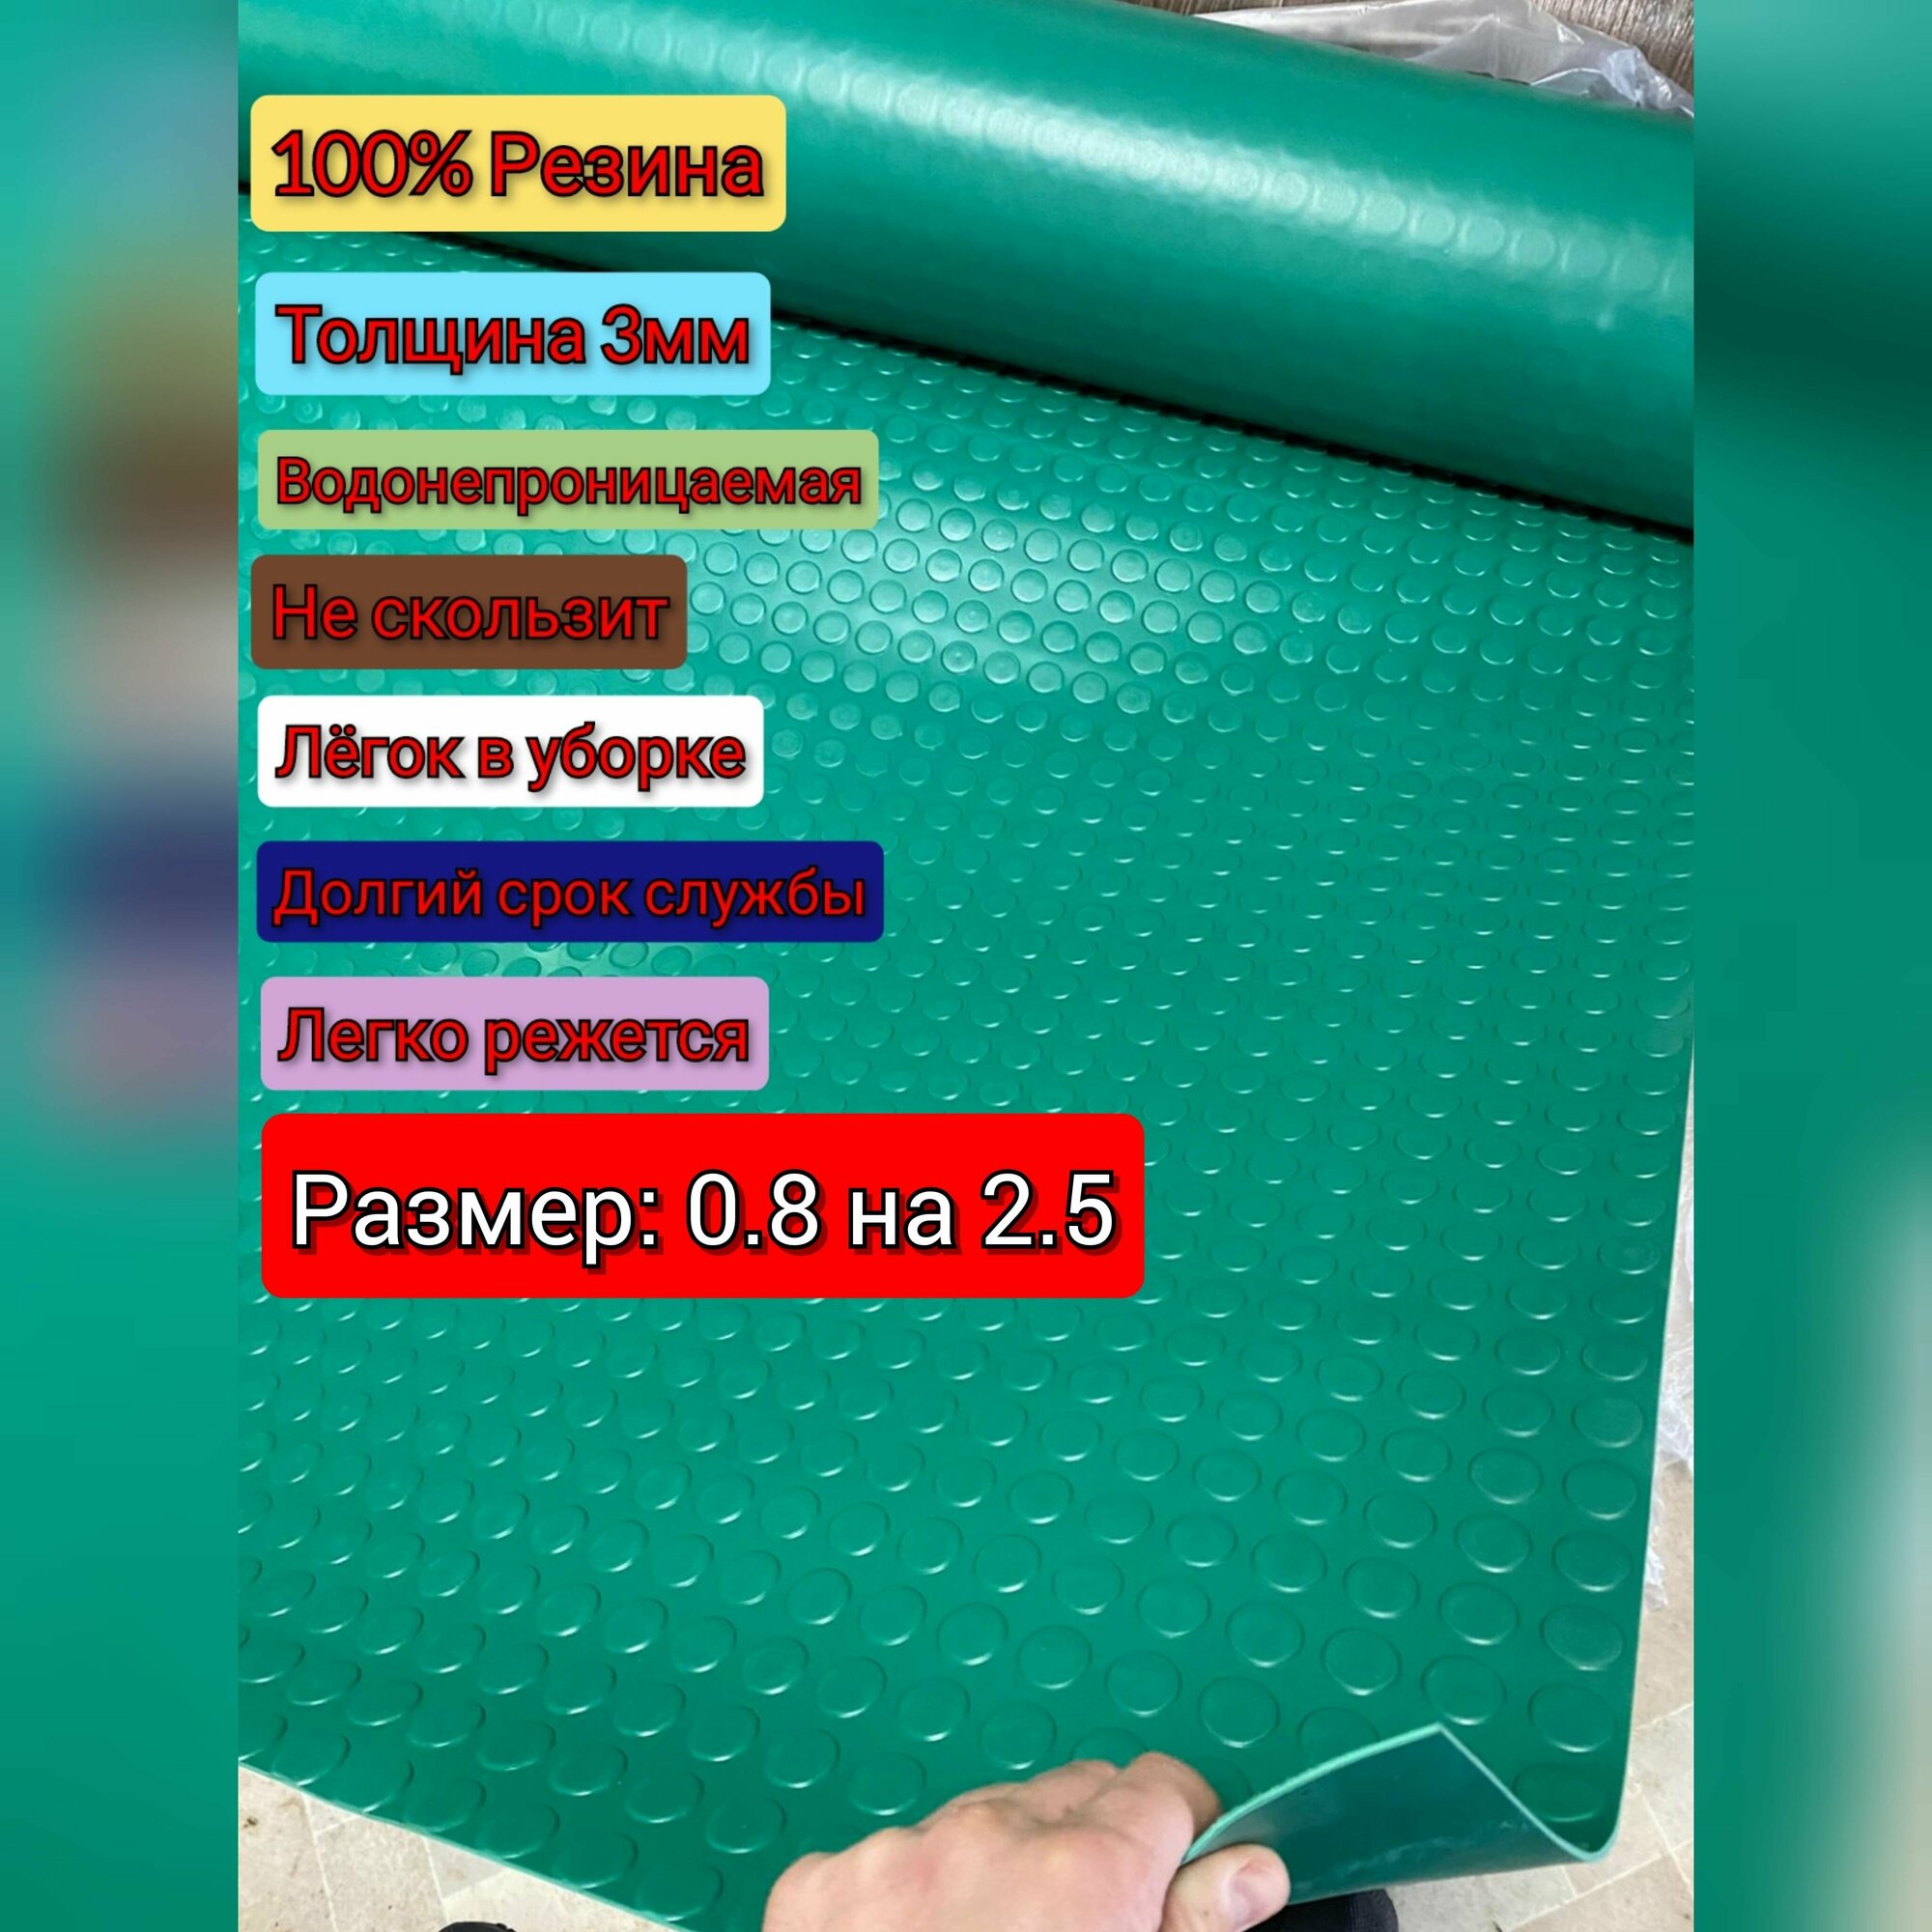 Резиновое покрытие напольное в рулоне 0.8 х 2.5 (Монета, цвет зелёный) Резиновая дорожка для авто, гаража, ступень, для лифта